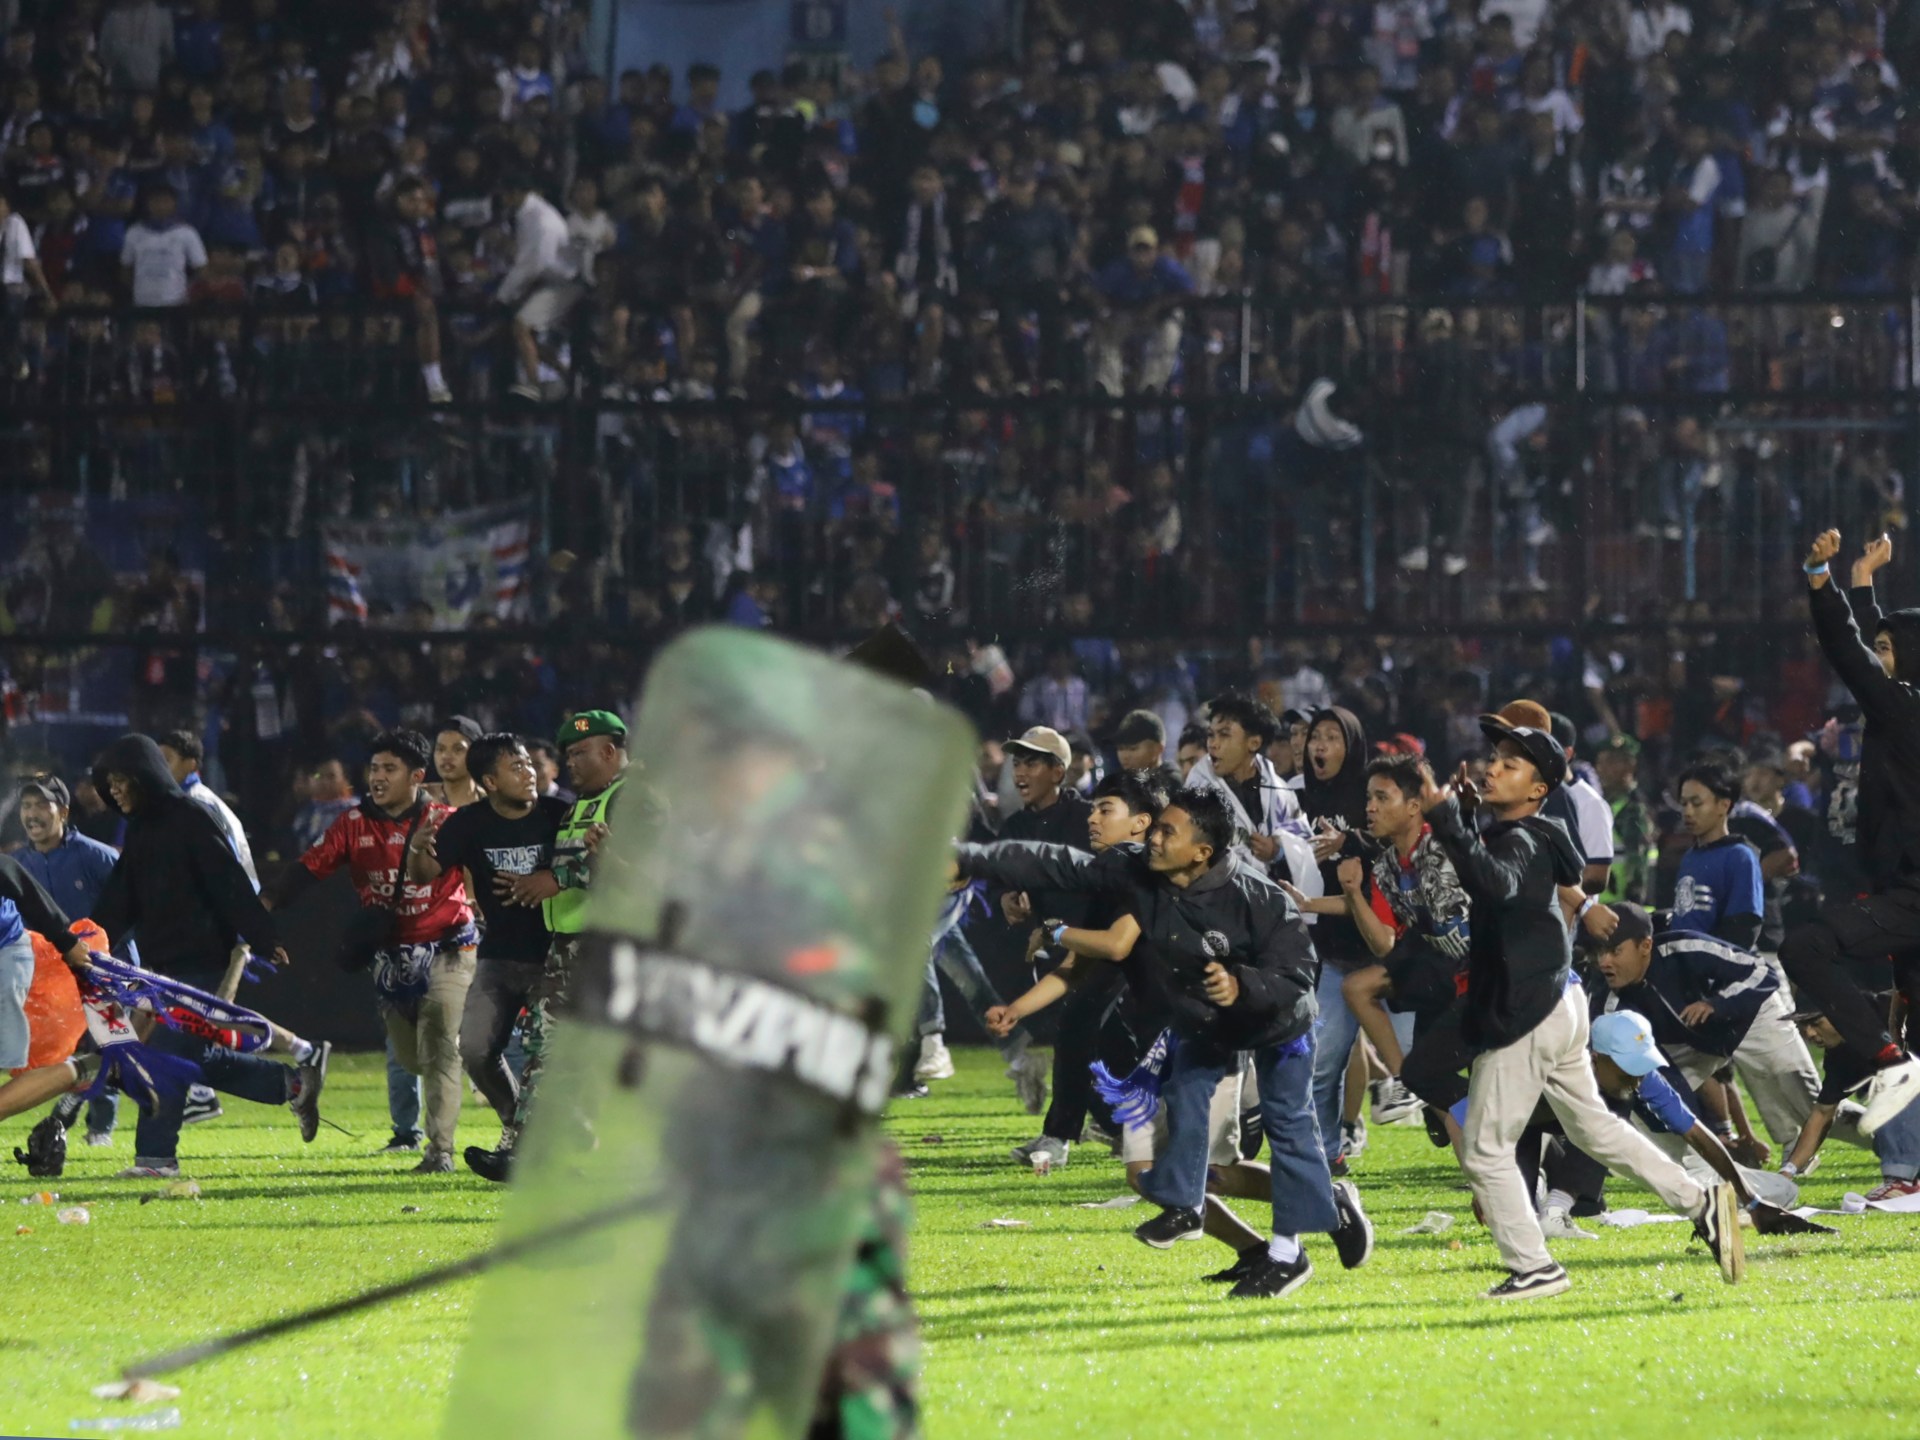 Timeline: How did Indonesia’s lethal soccer stampede unfold? | Information